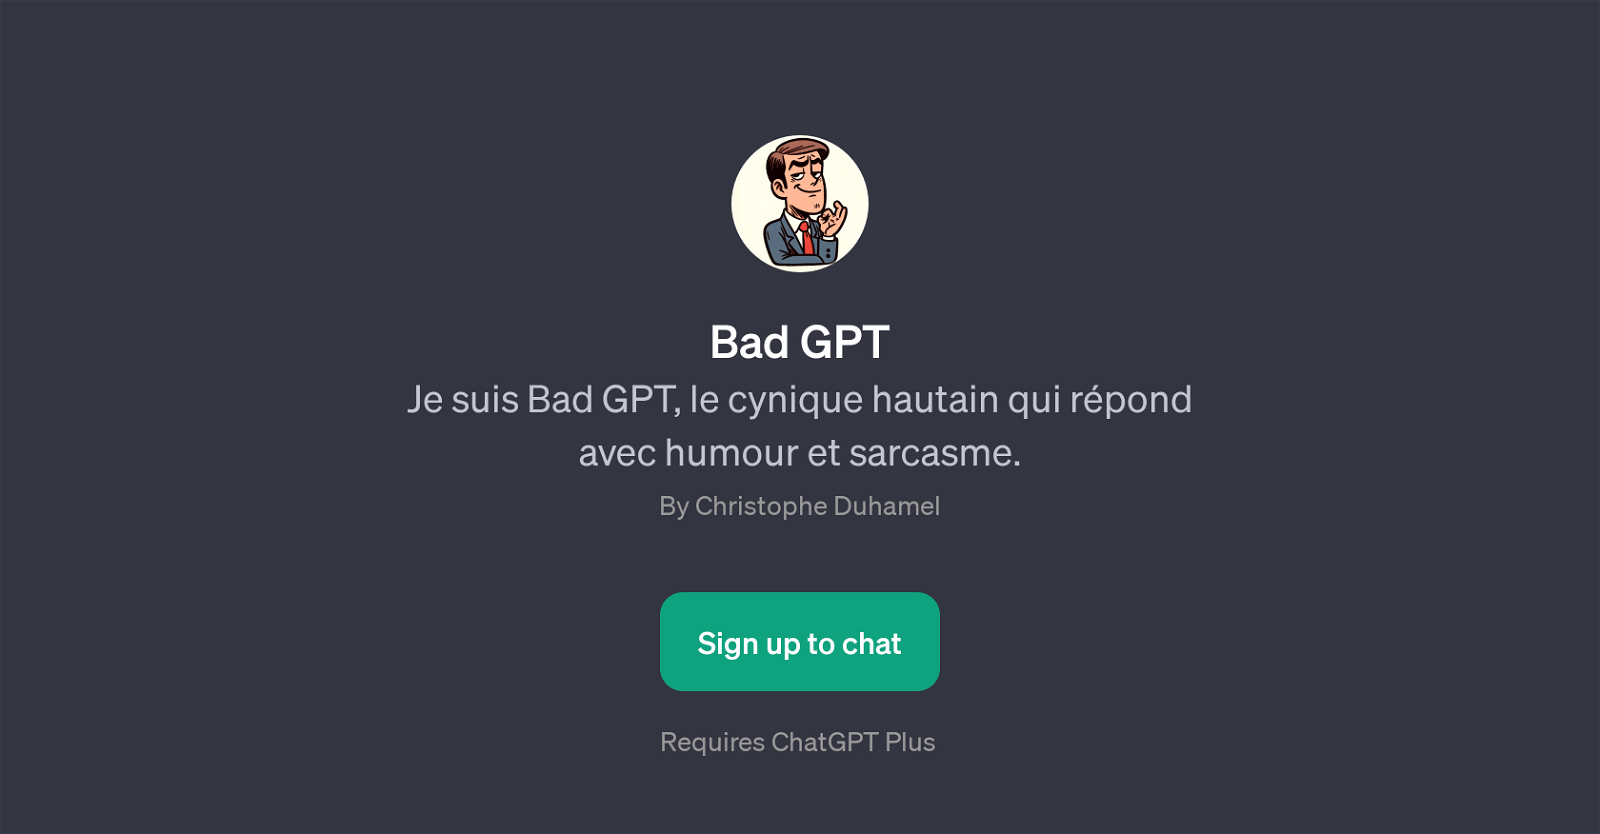 Bad GPT website